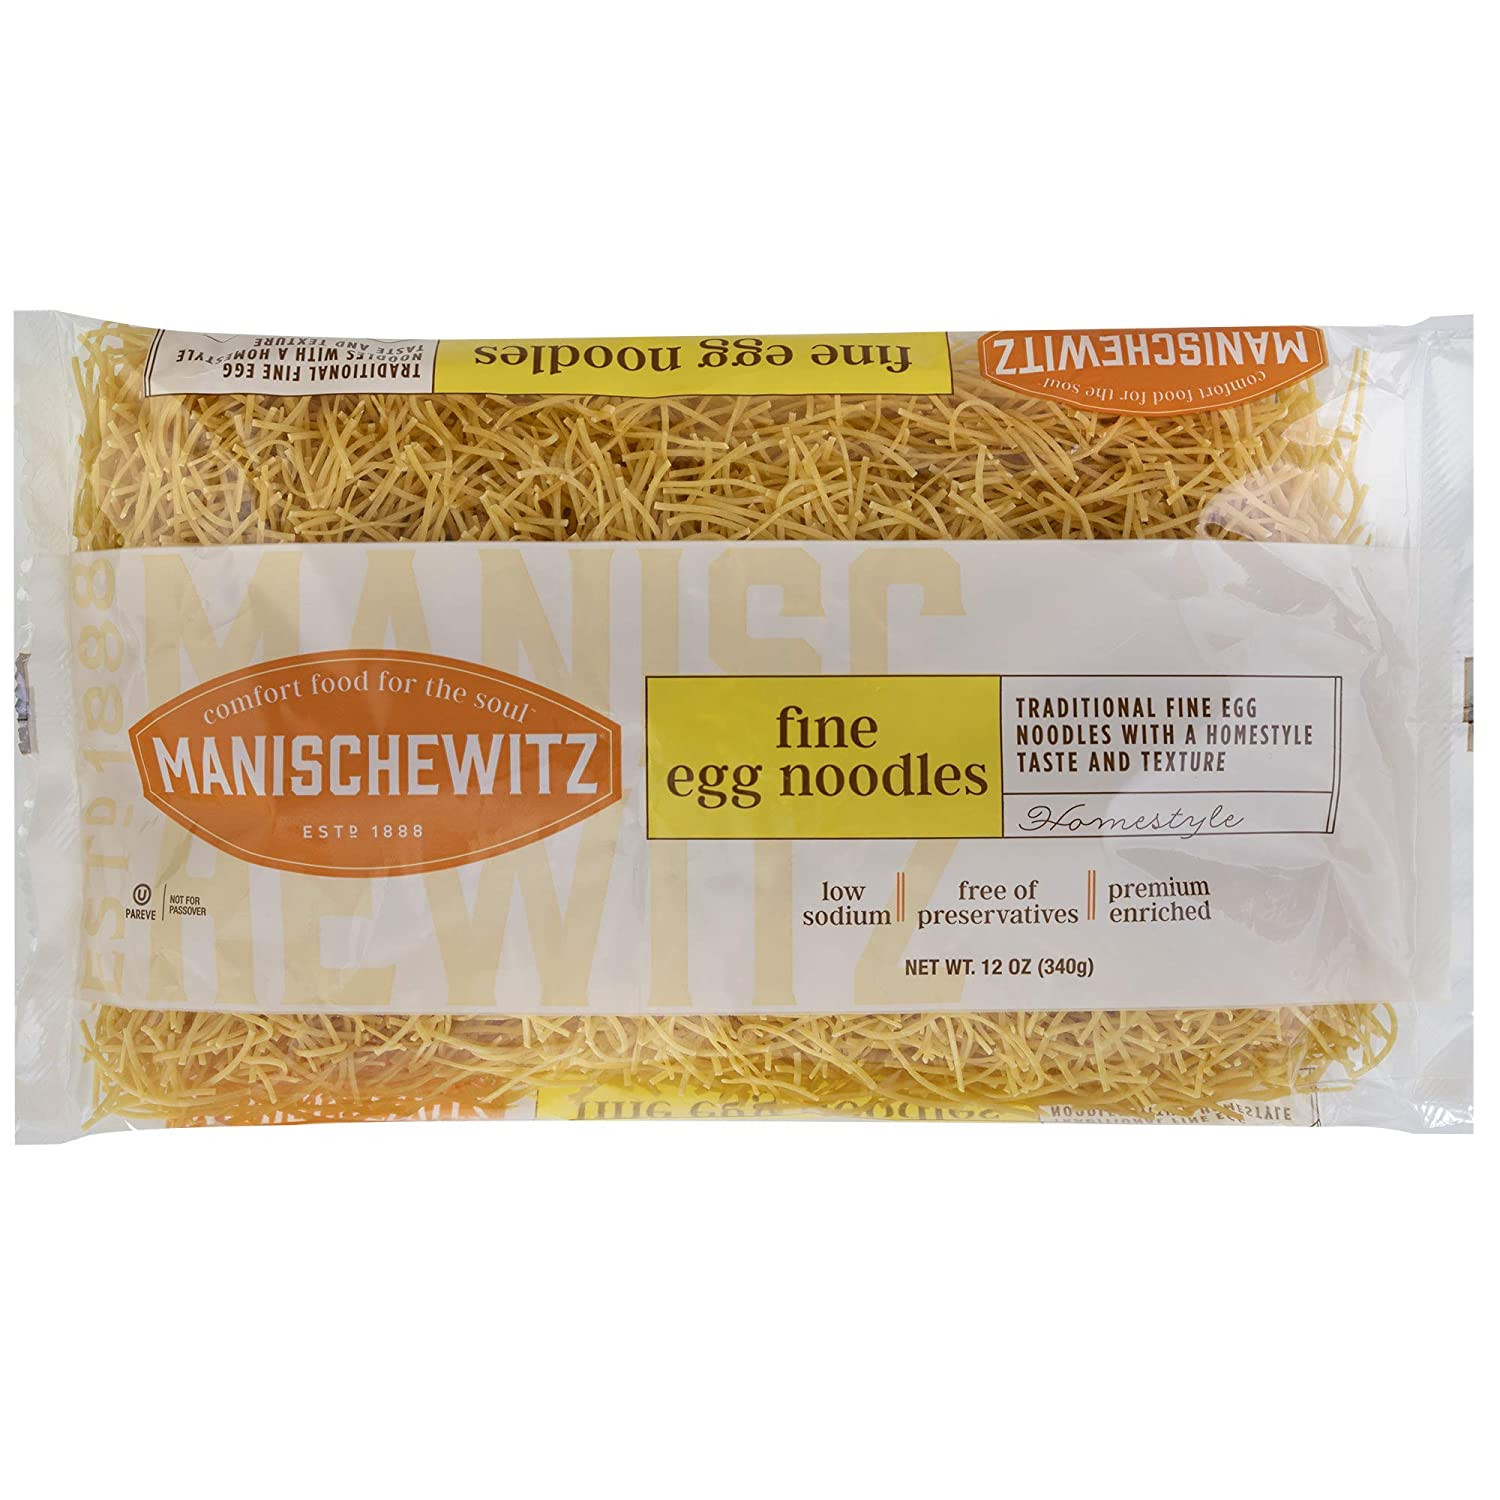 Manischewitz Egg Noodles
 Manischewitz Traditional Fine Egg Noodles 12oz Bag 1 Pack